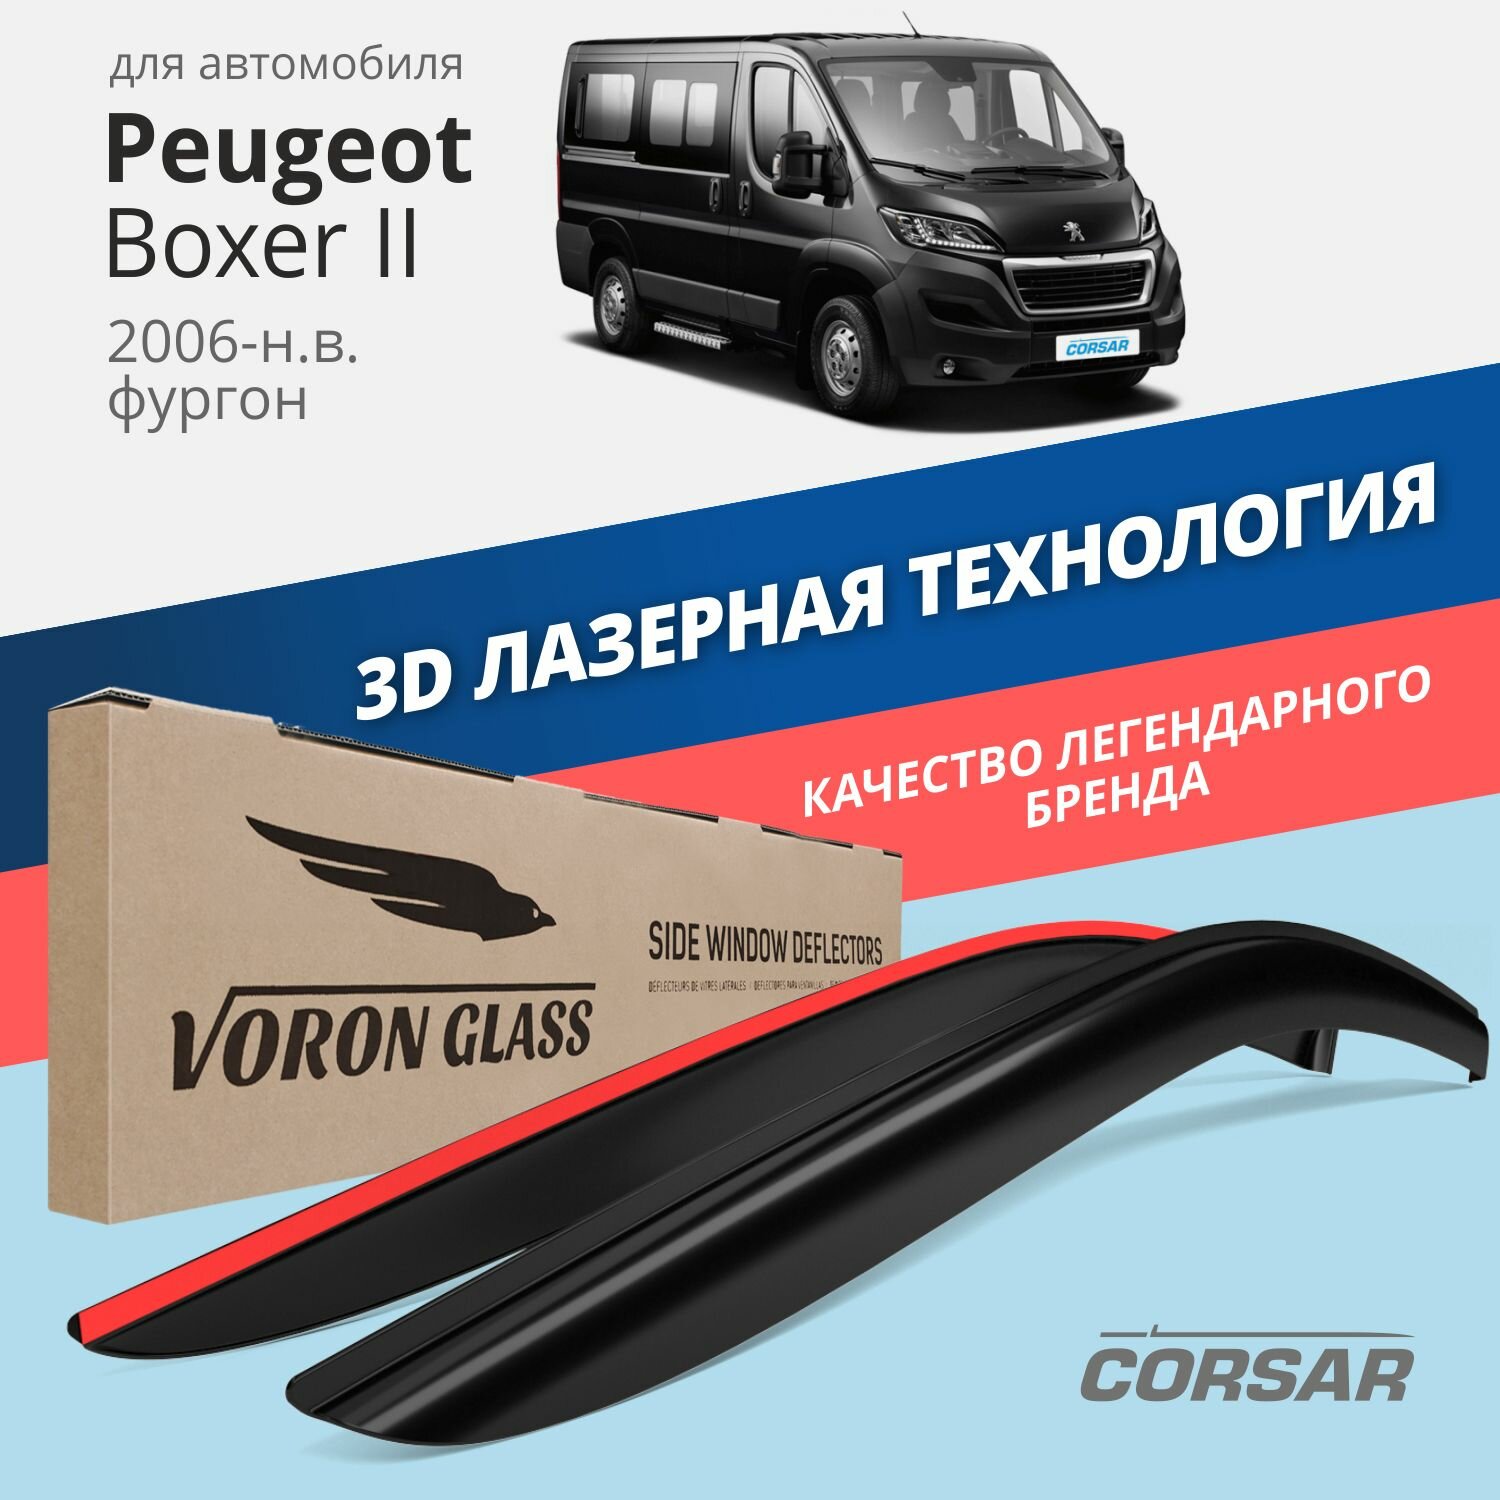 Дефлекторы окон Voron Glass серия Corsar для Peugeot Boxer II 2006-н. в. накладные 2 шт.